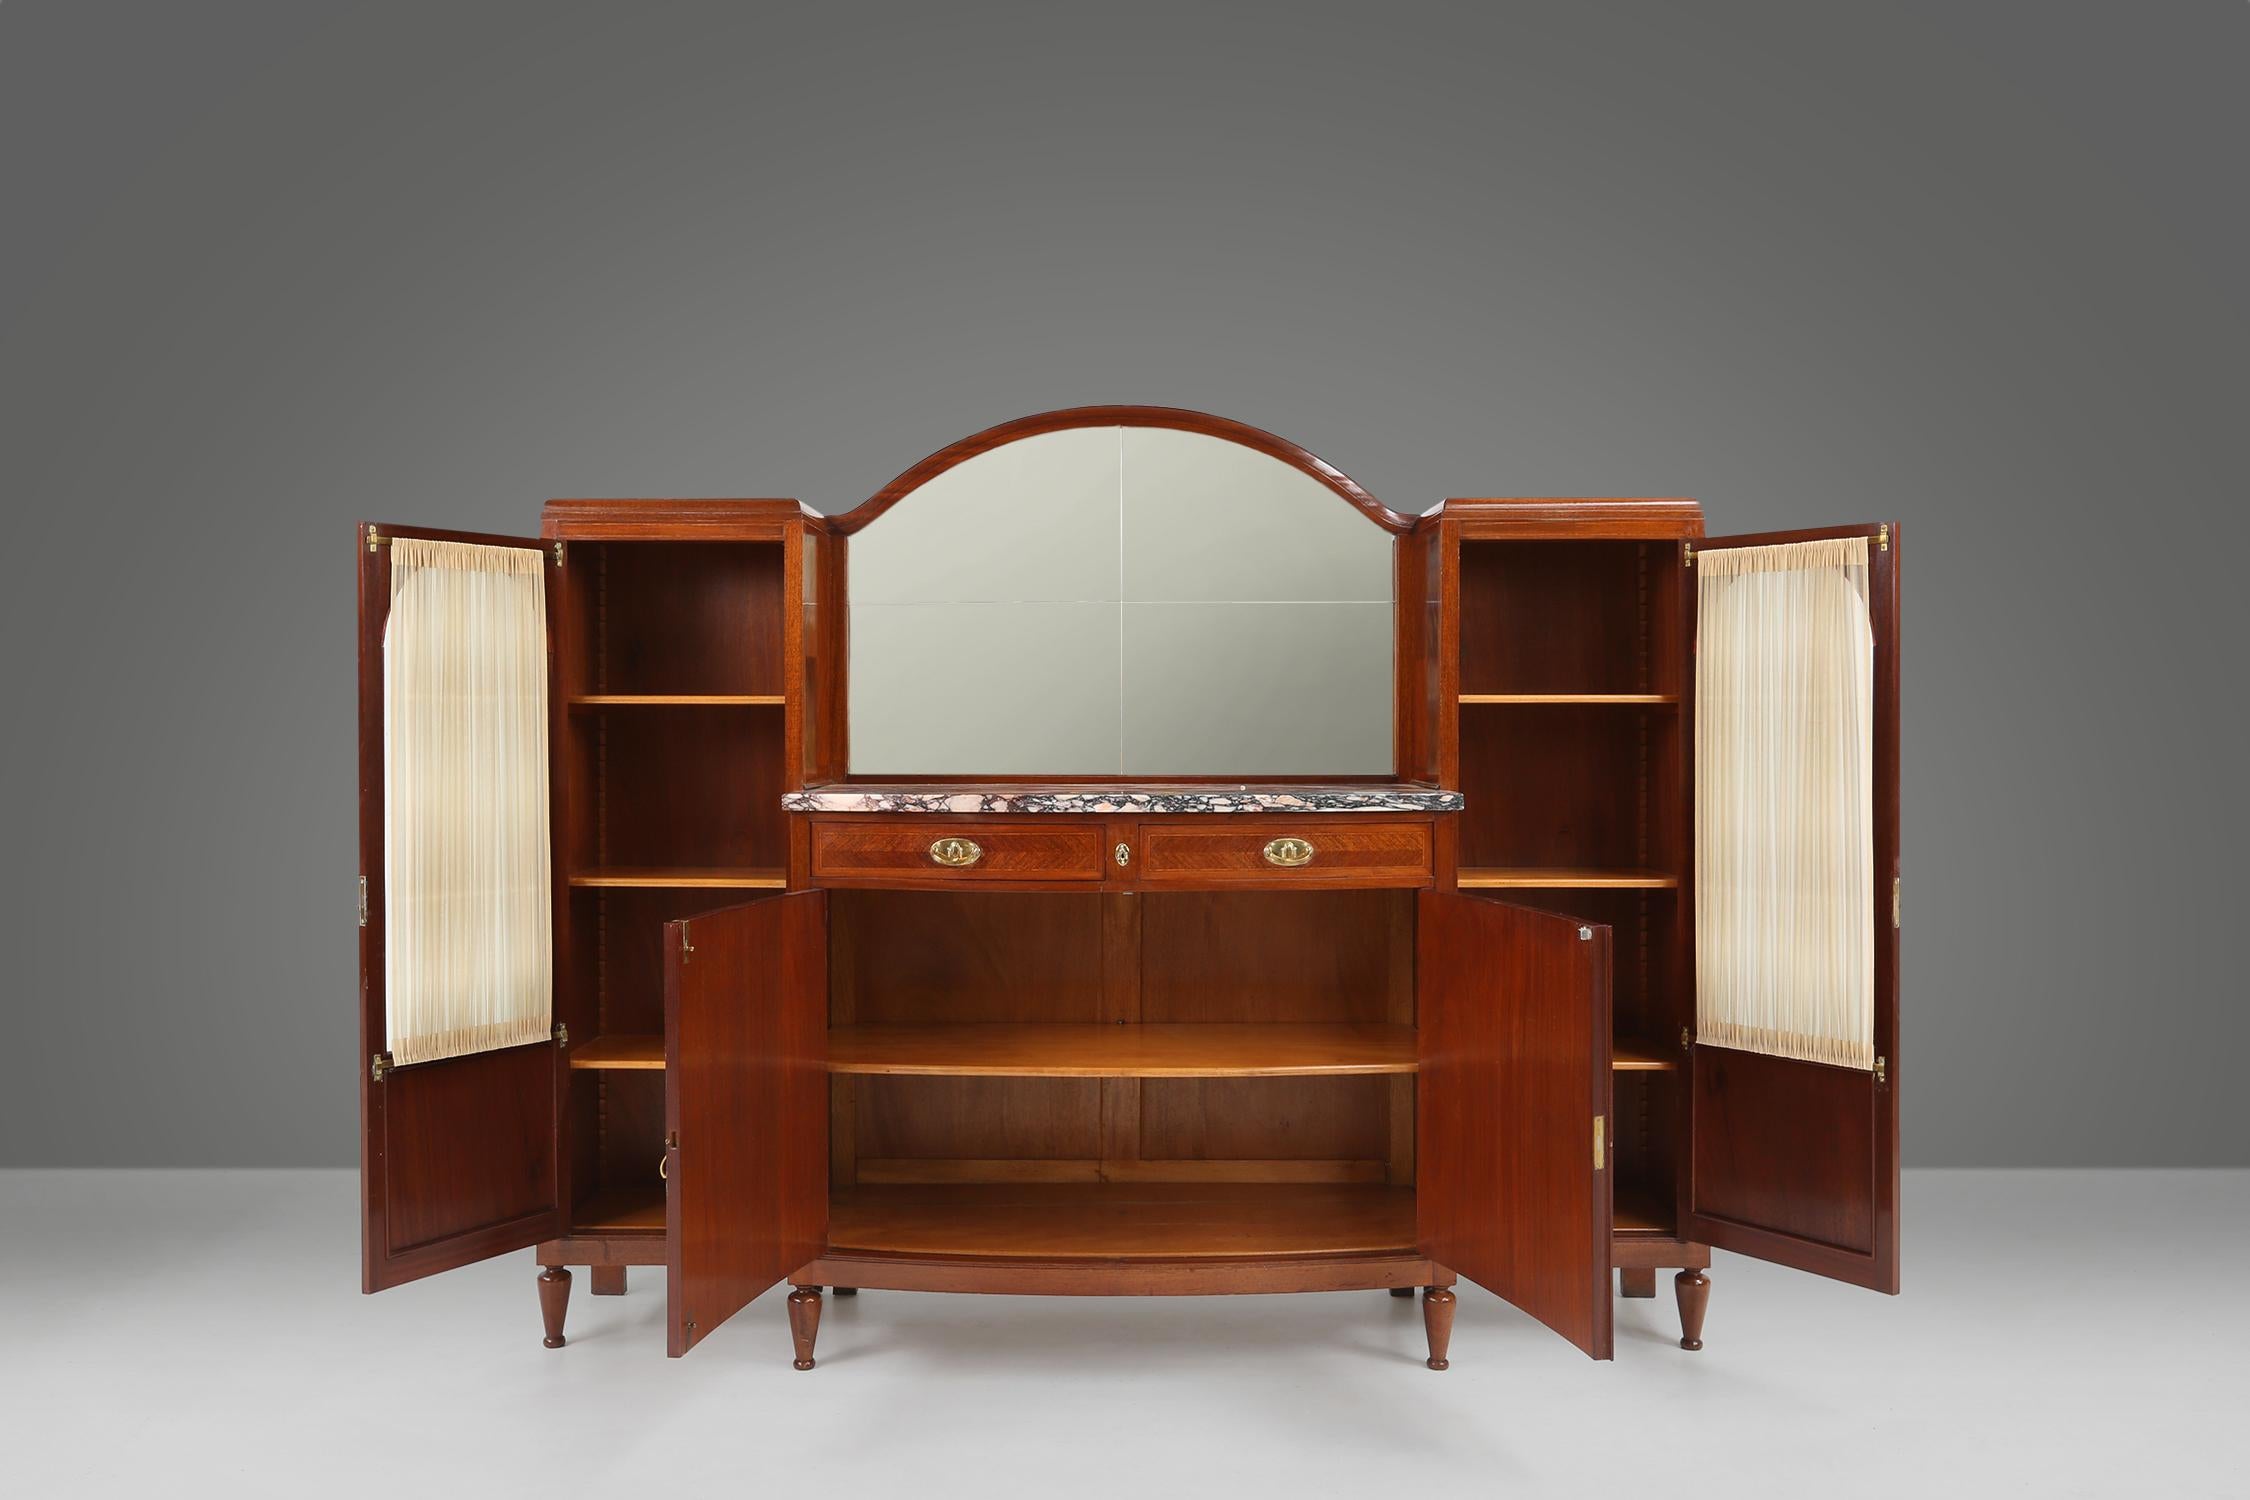 Belgian Art Deco cabinet by De Coene 1930 For Sale